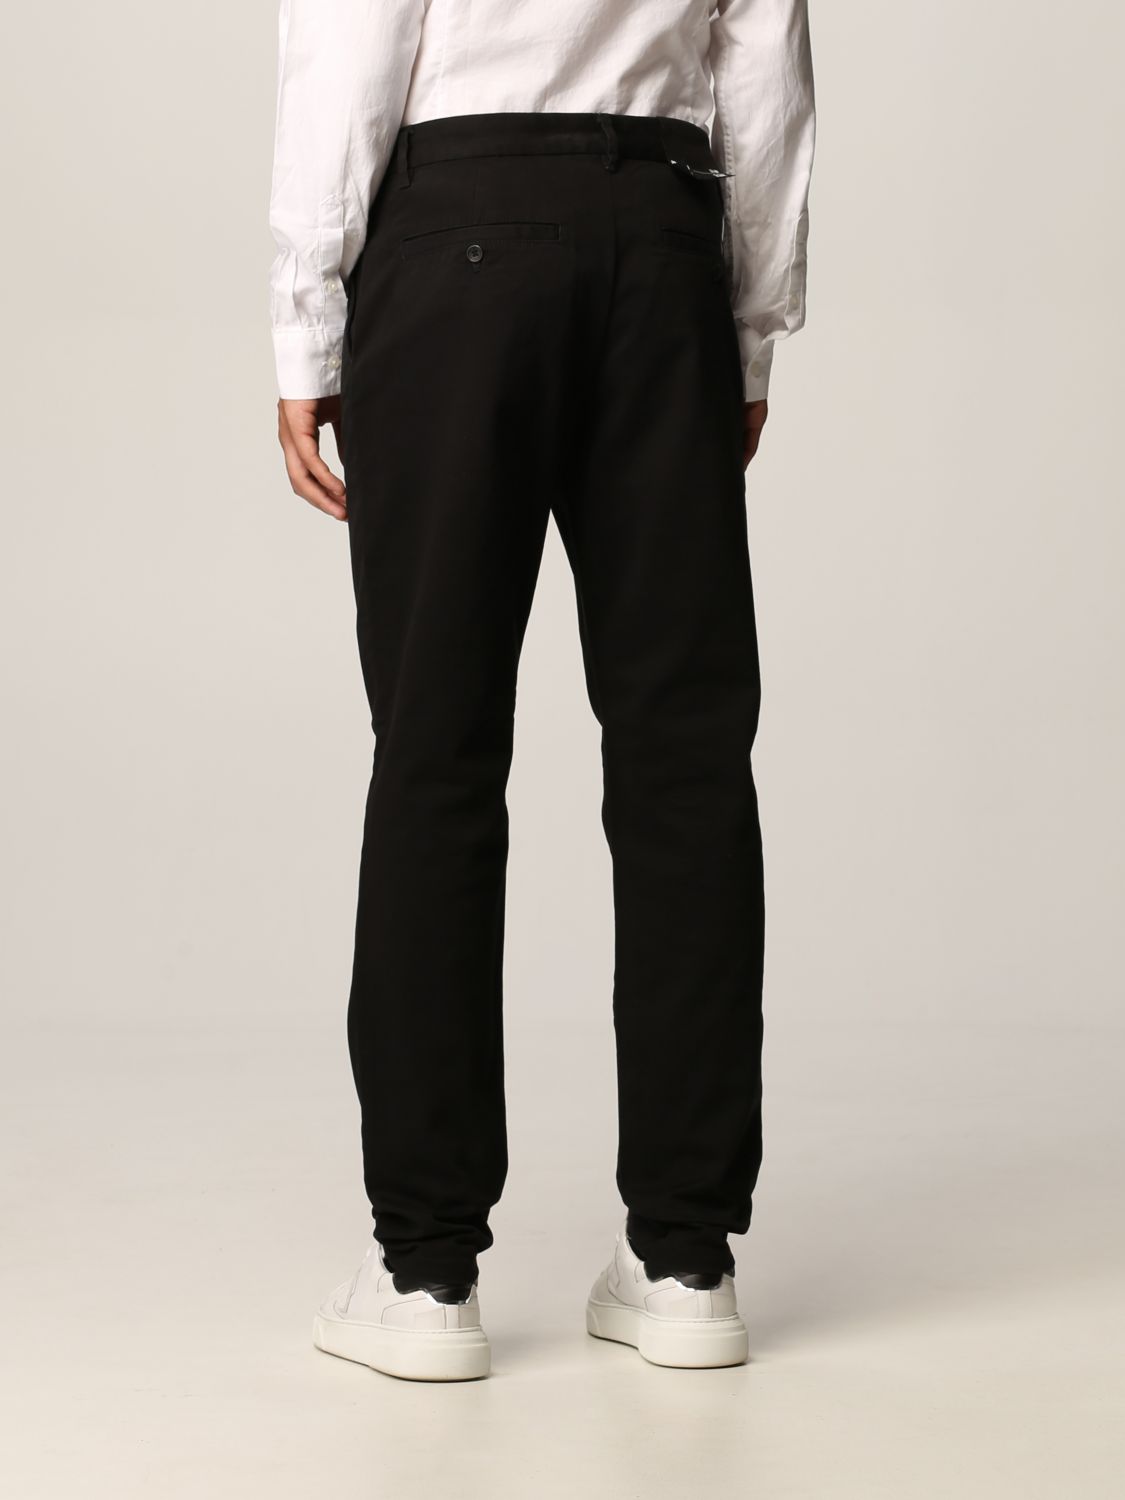 ARMANI EXCHANGE: cotton pants - Black | Armani Exchange pants 8NZP43 ...